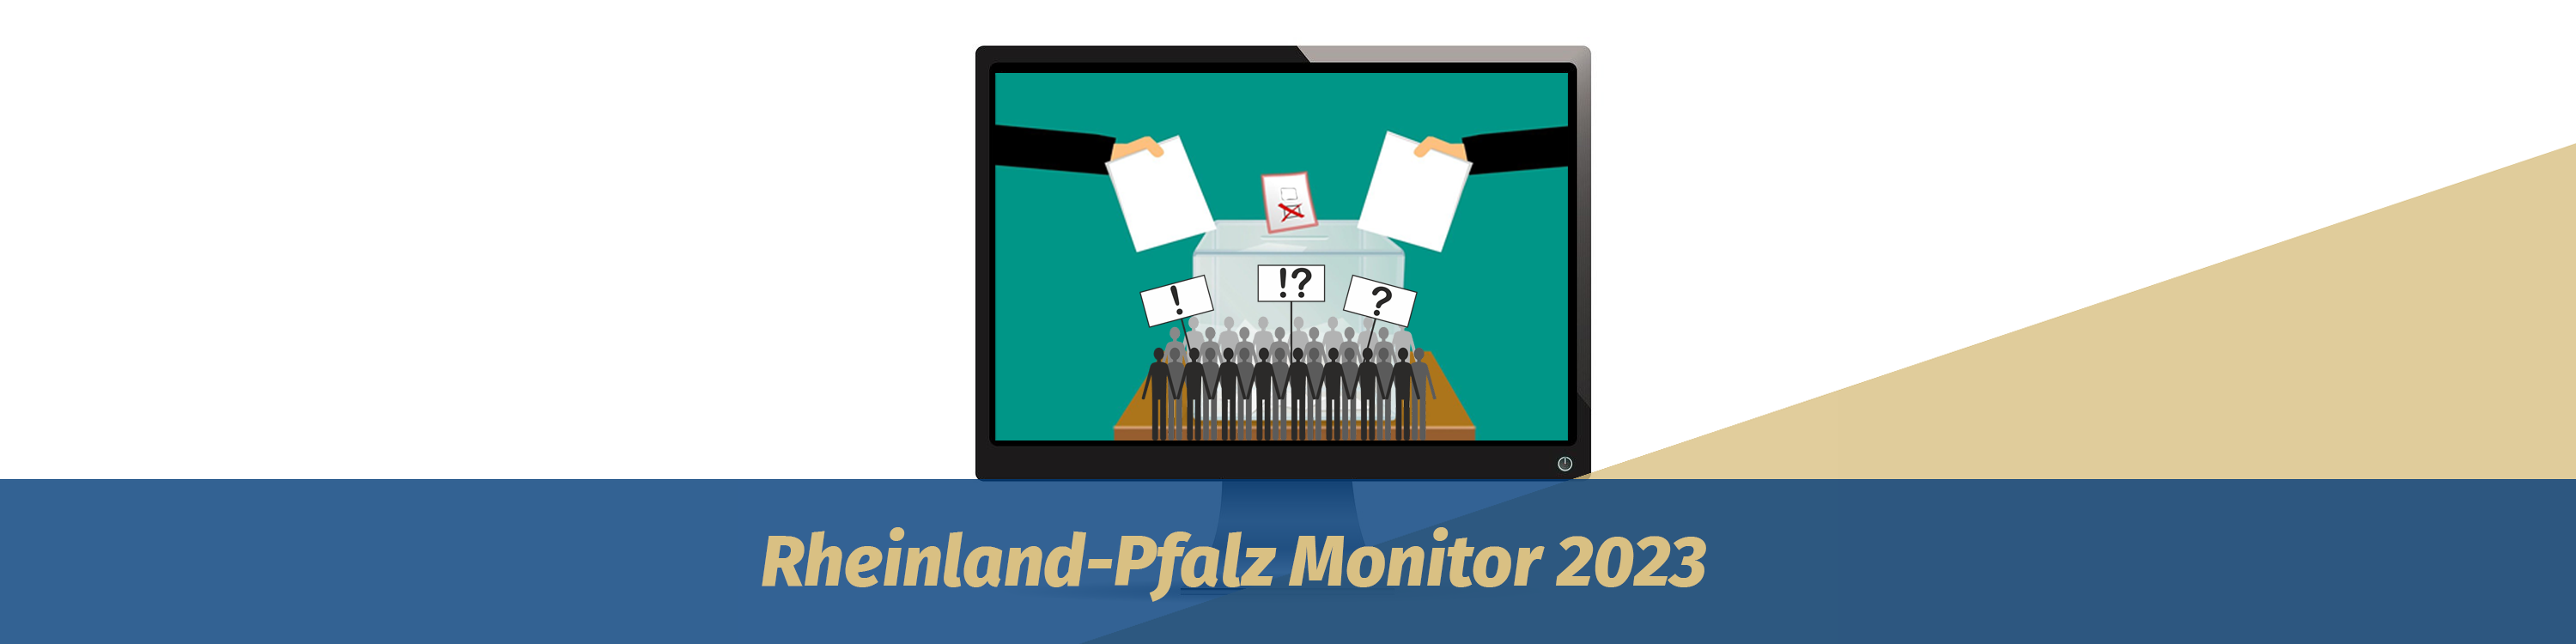 Rheinland-Pfalz-Monitor 2023. Auf einem Bildschirm ist eine Wahlurne abgebildet. Davor stehen viele Strichmännchen, die symbolisch ihre Meinung äußern.